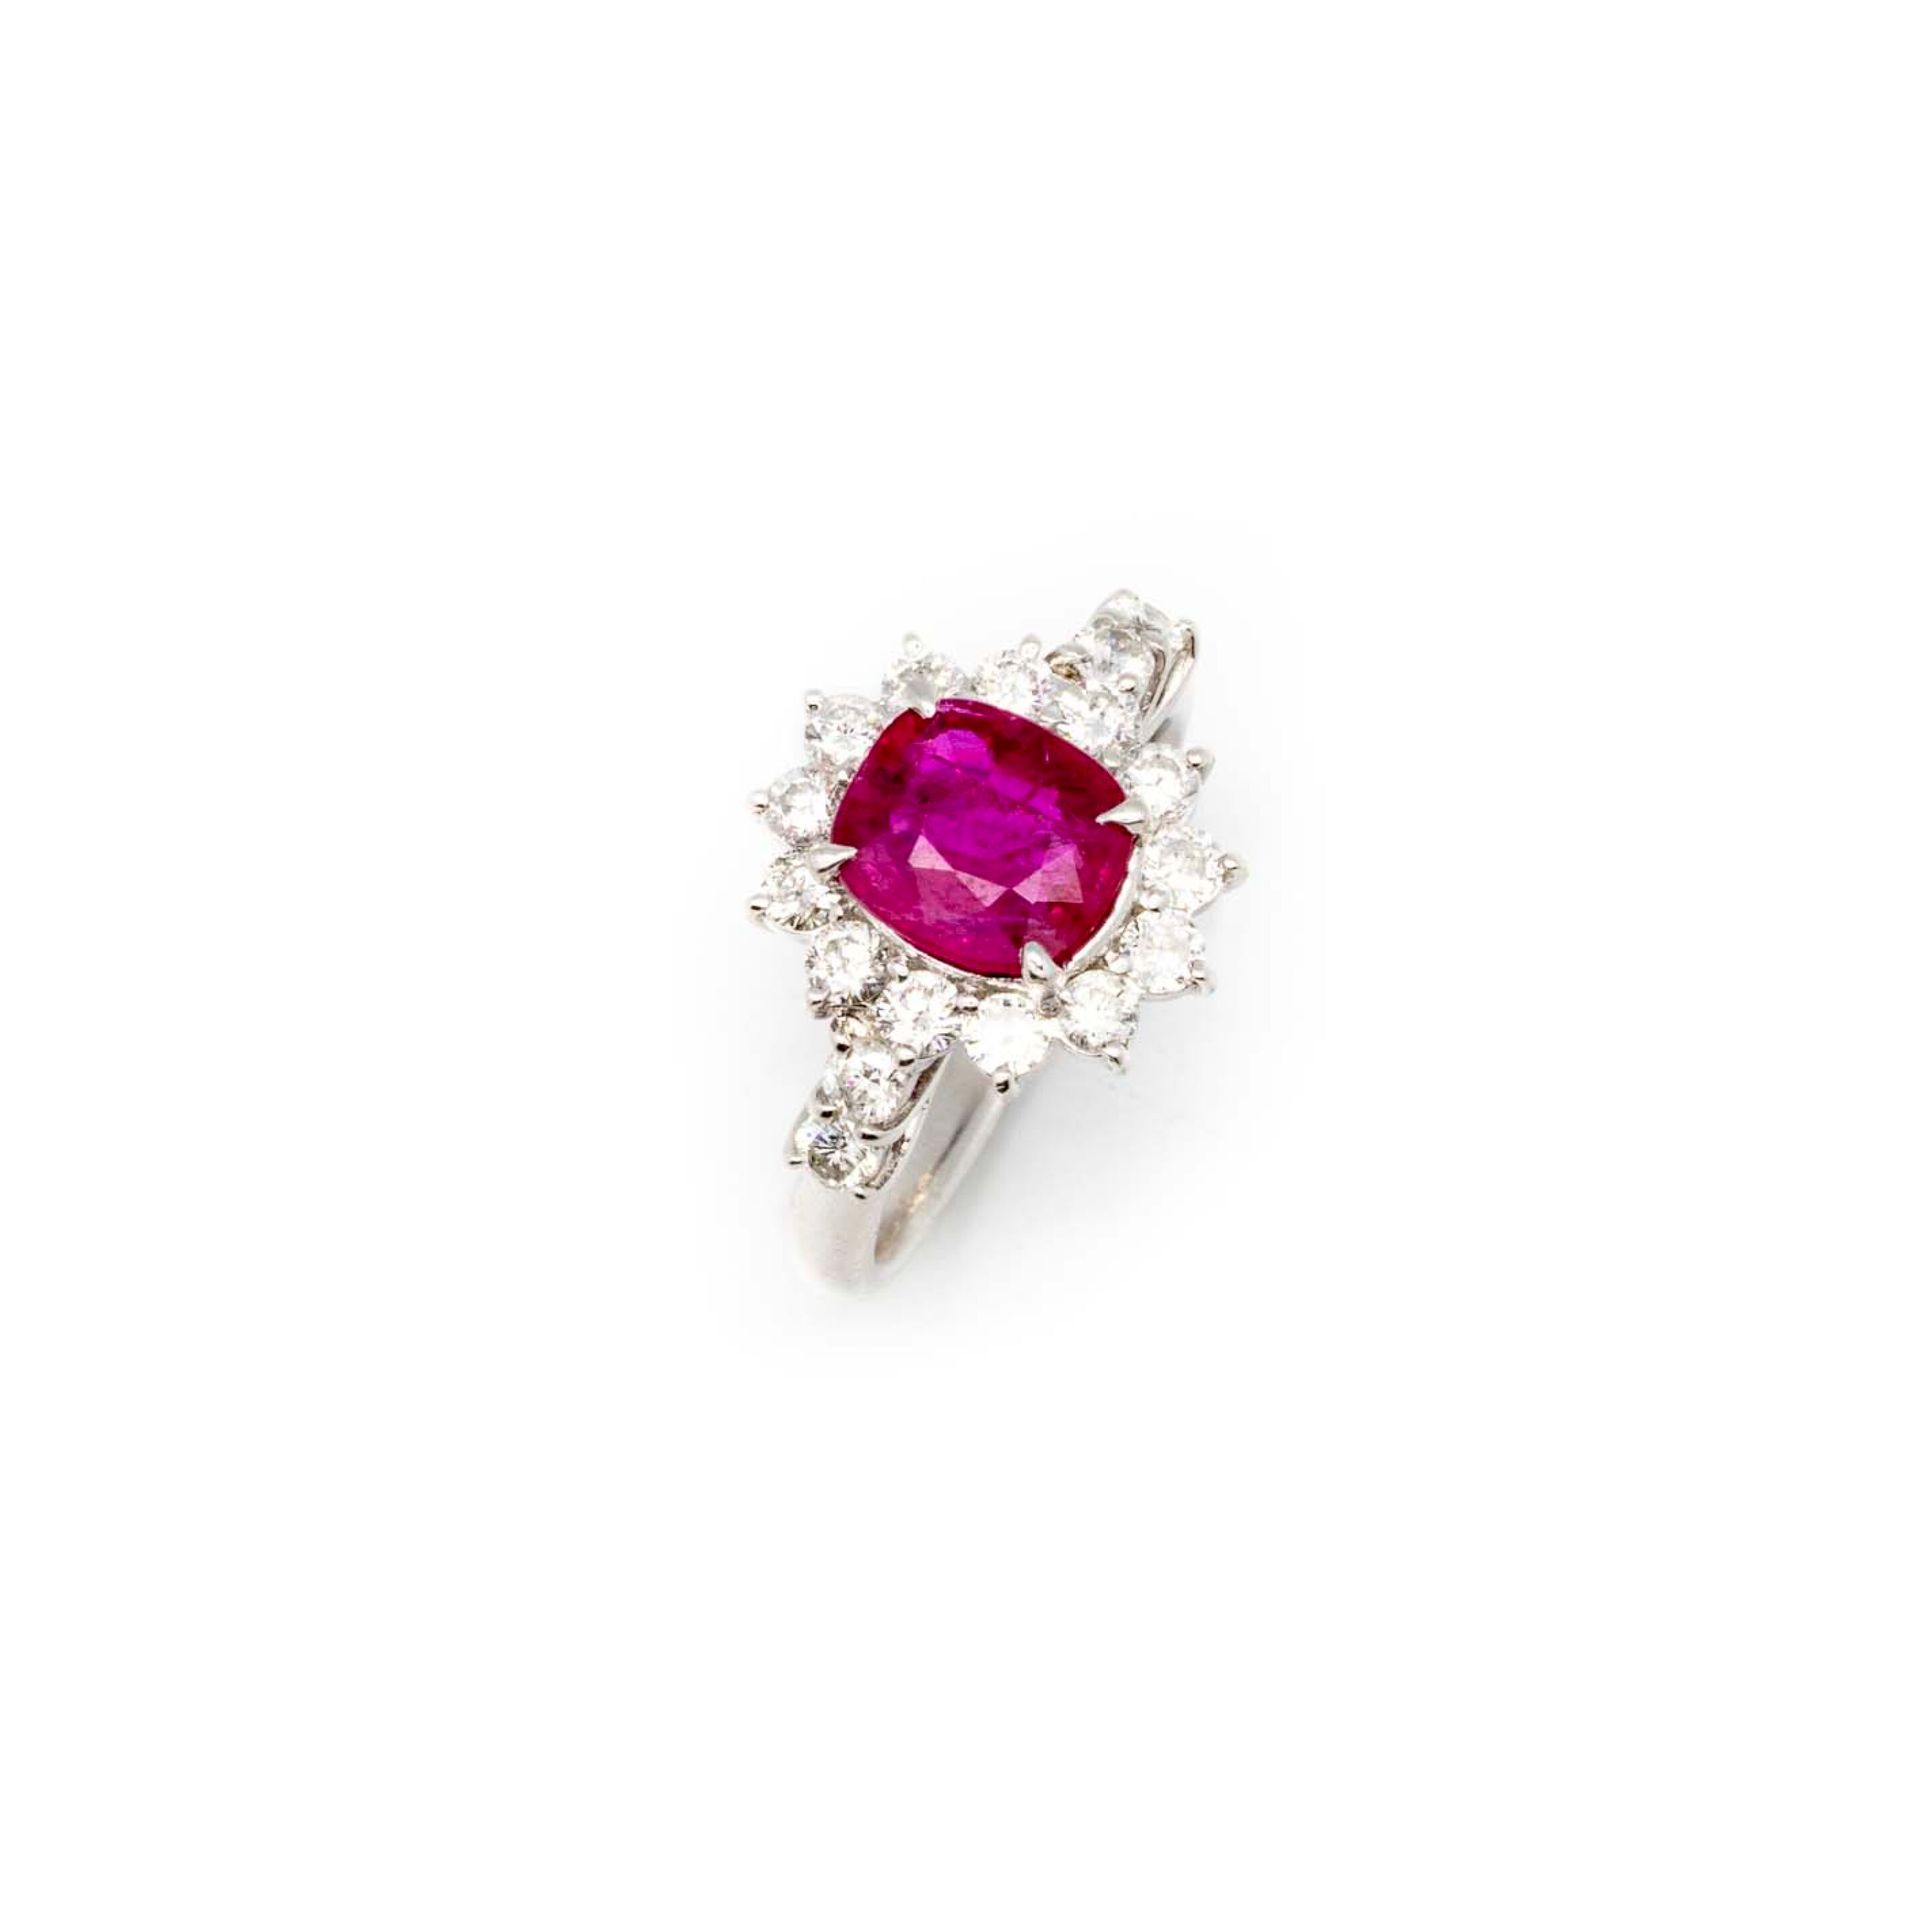 Null 白金戒指，镶有一颗重达1.72克拉的缅甸红宝石，周围镶有钻石。

TDD : 51

毛重：6.9克。